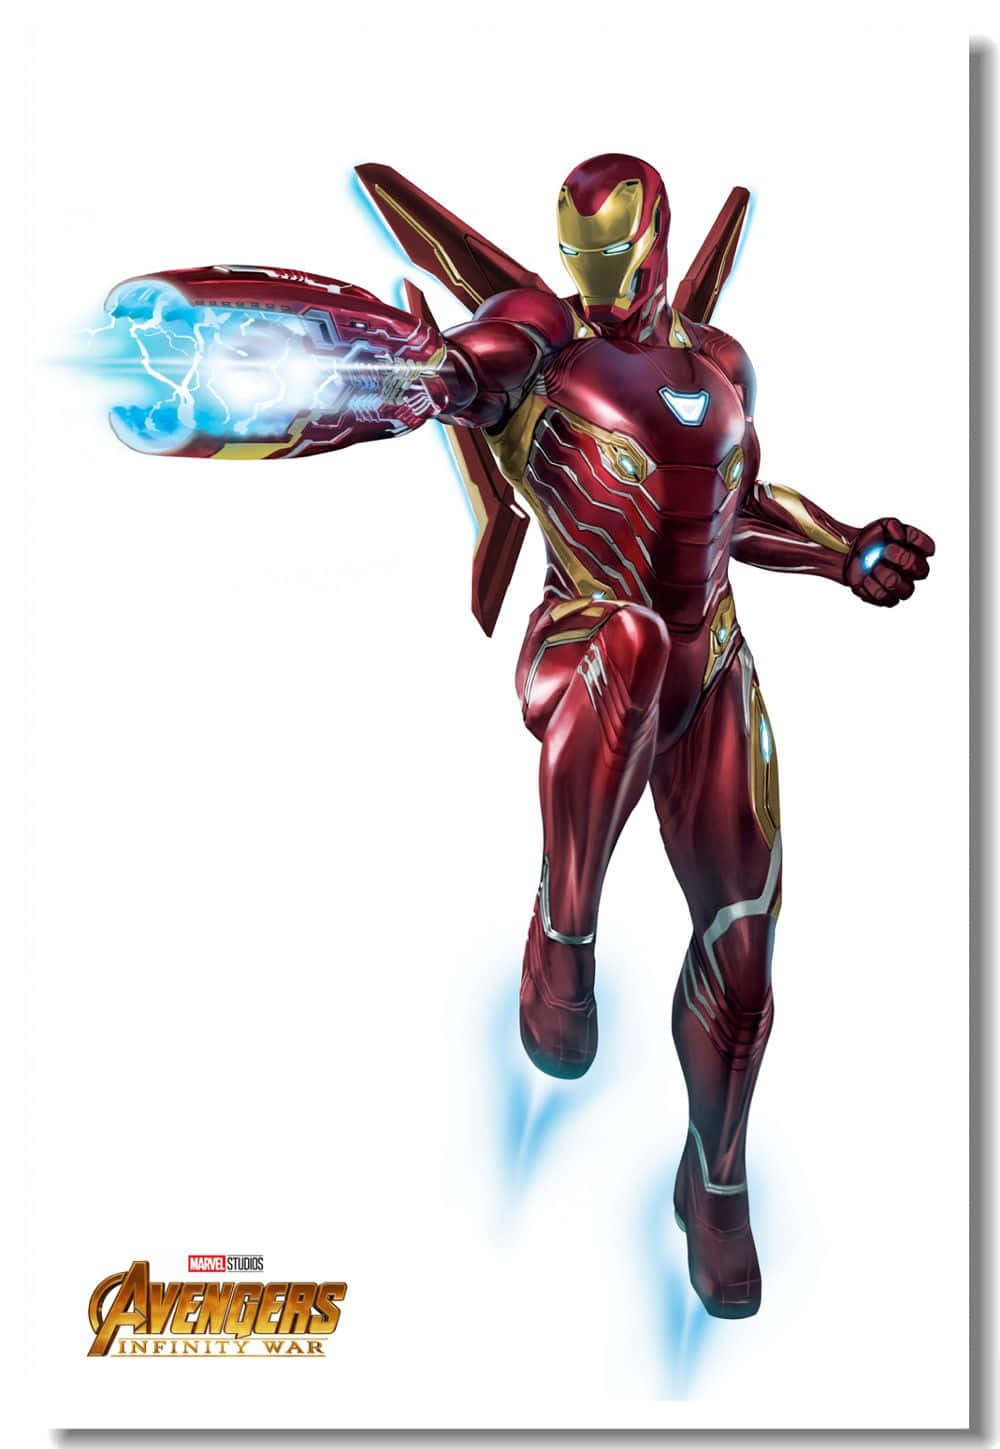 Avengers Iron Man Infinity War Poster Wallpaper